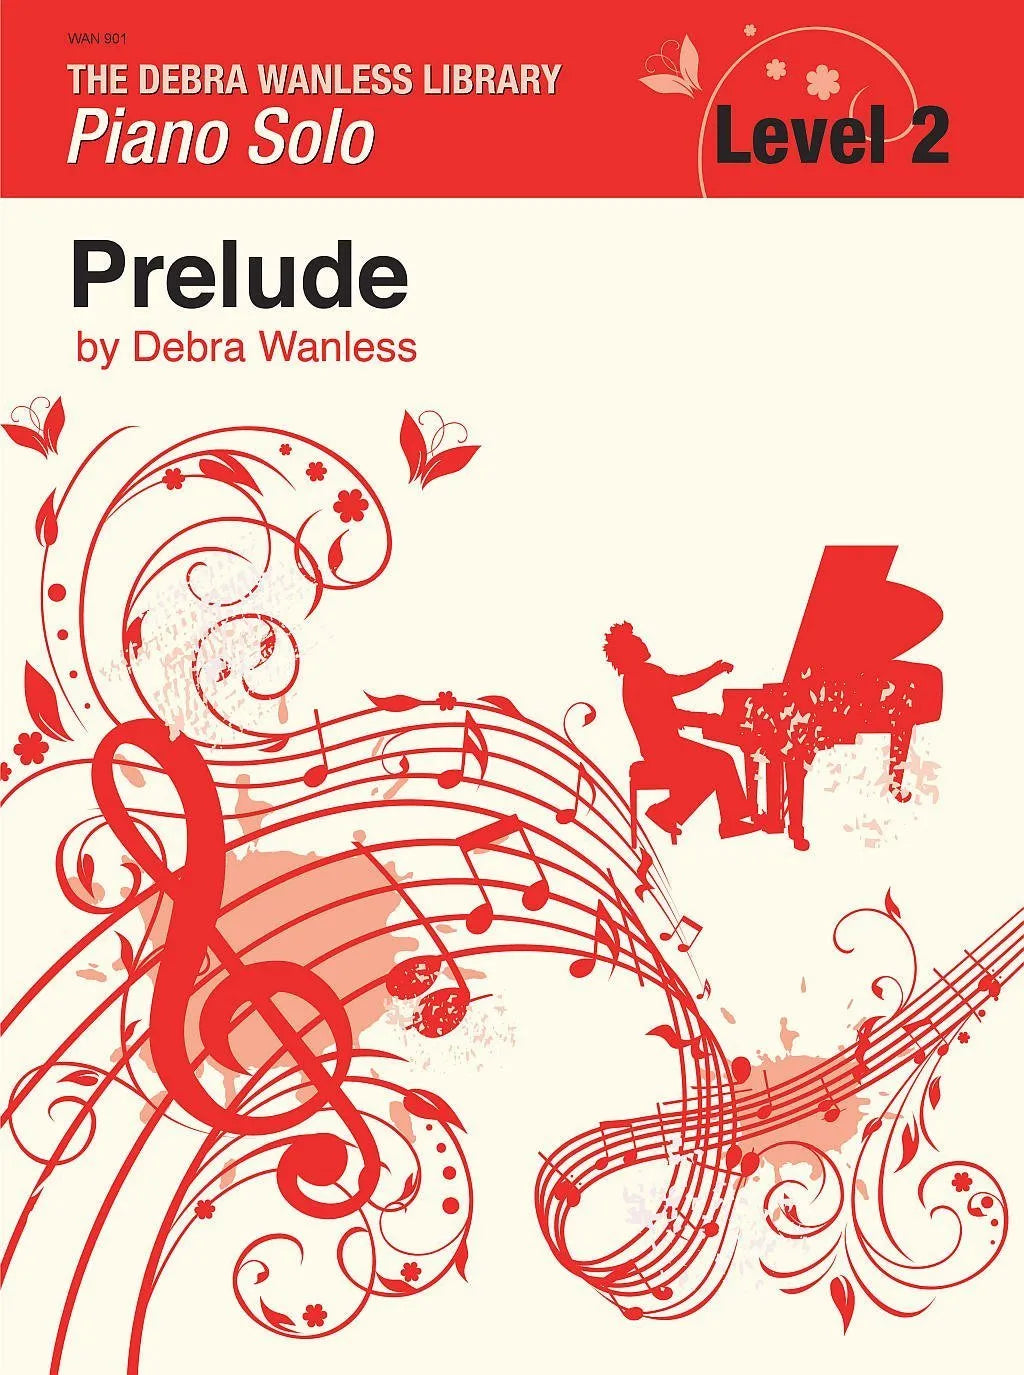 Prelude by Debra Wanless